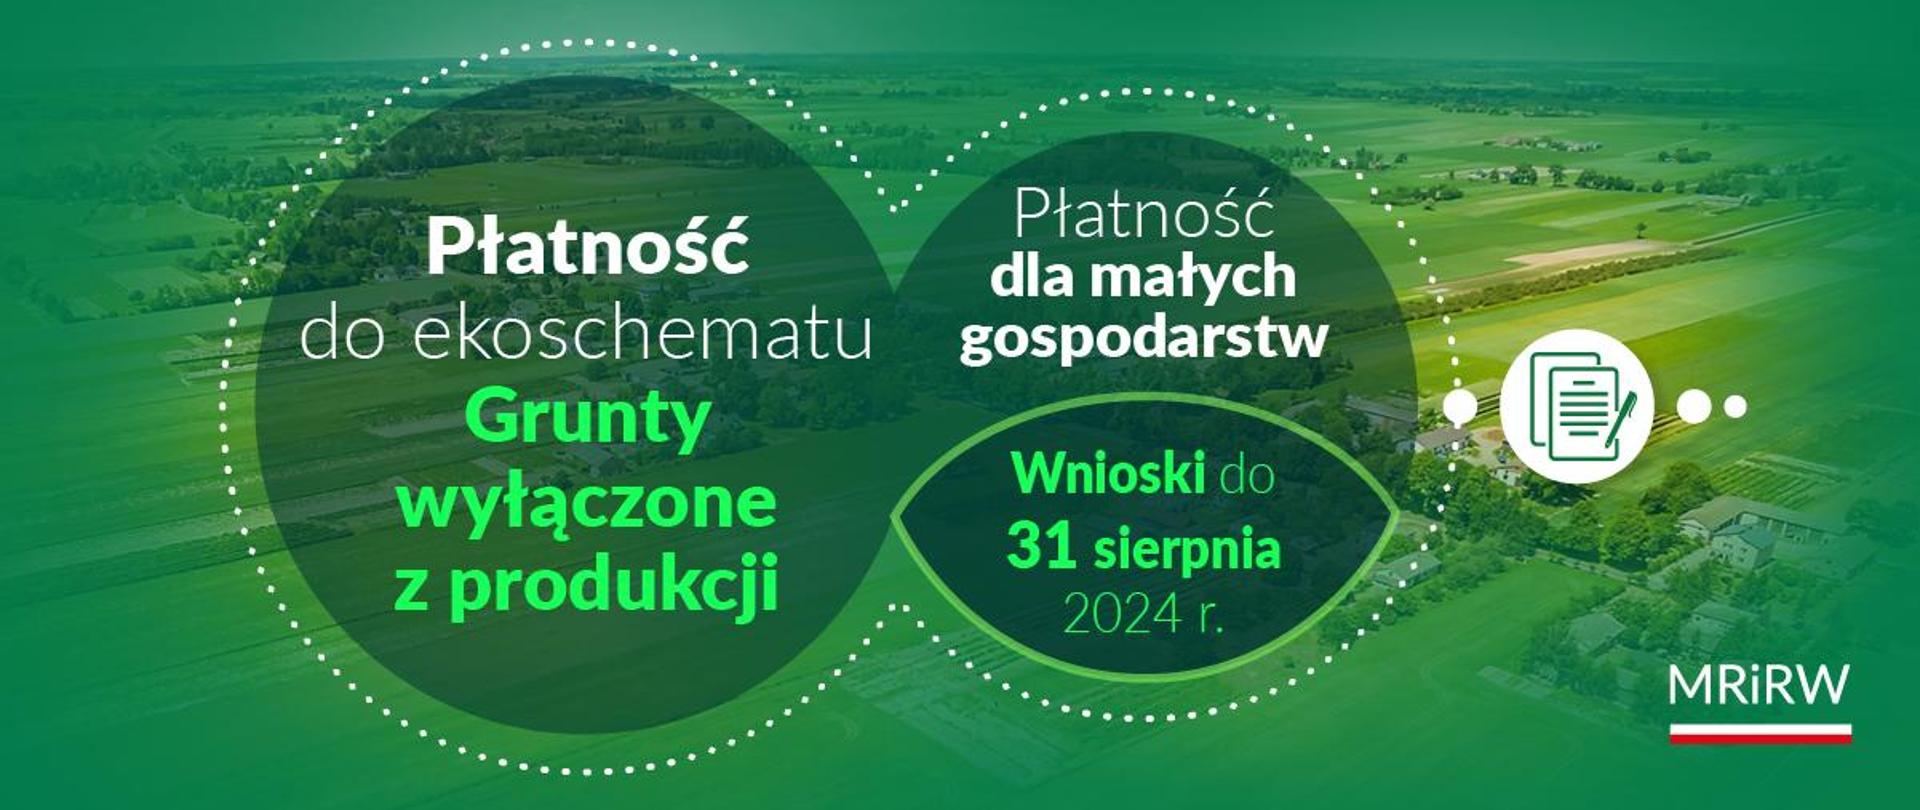 Płatność dla małych gospodarstw oraz Płatność do ekoschematu Grunty wyłączone z produkcji – wnioski można składać do 31 sierpnia 2024 r.